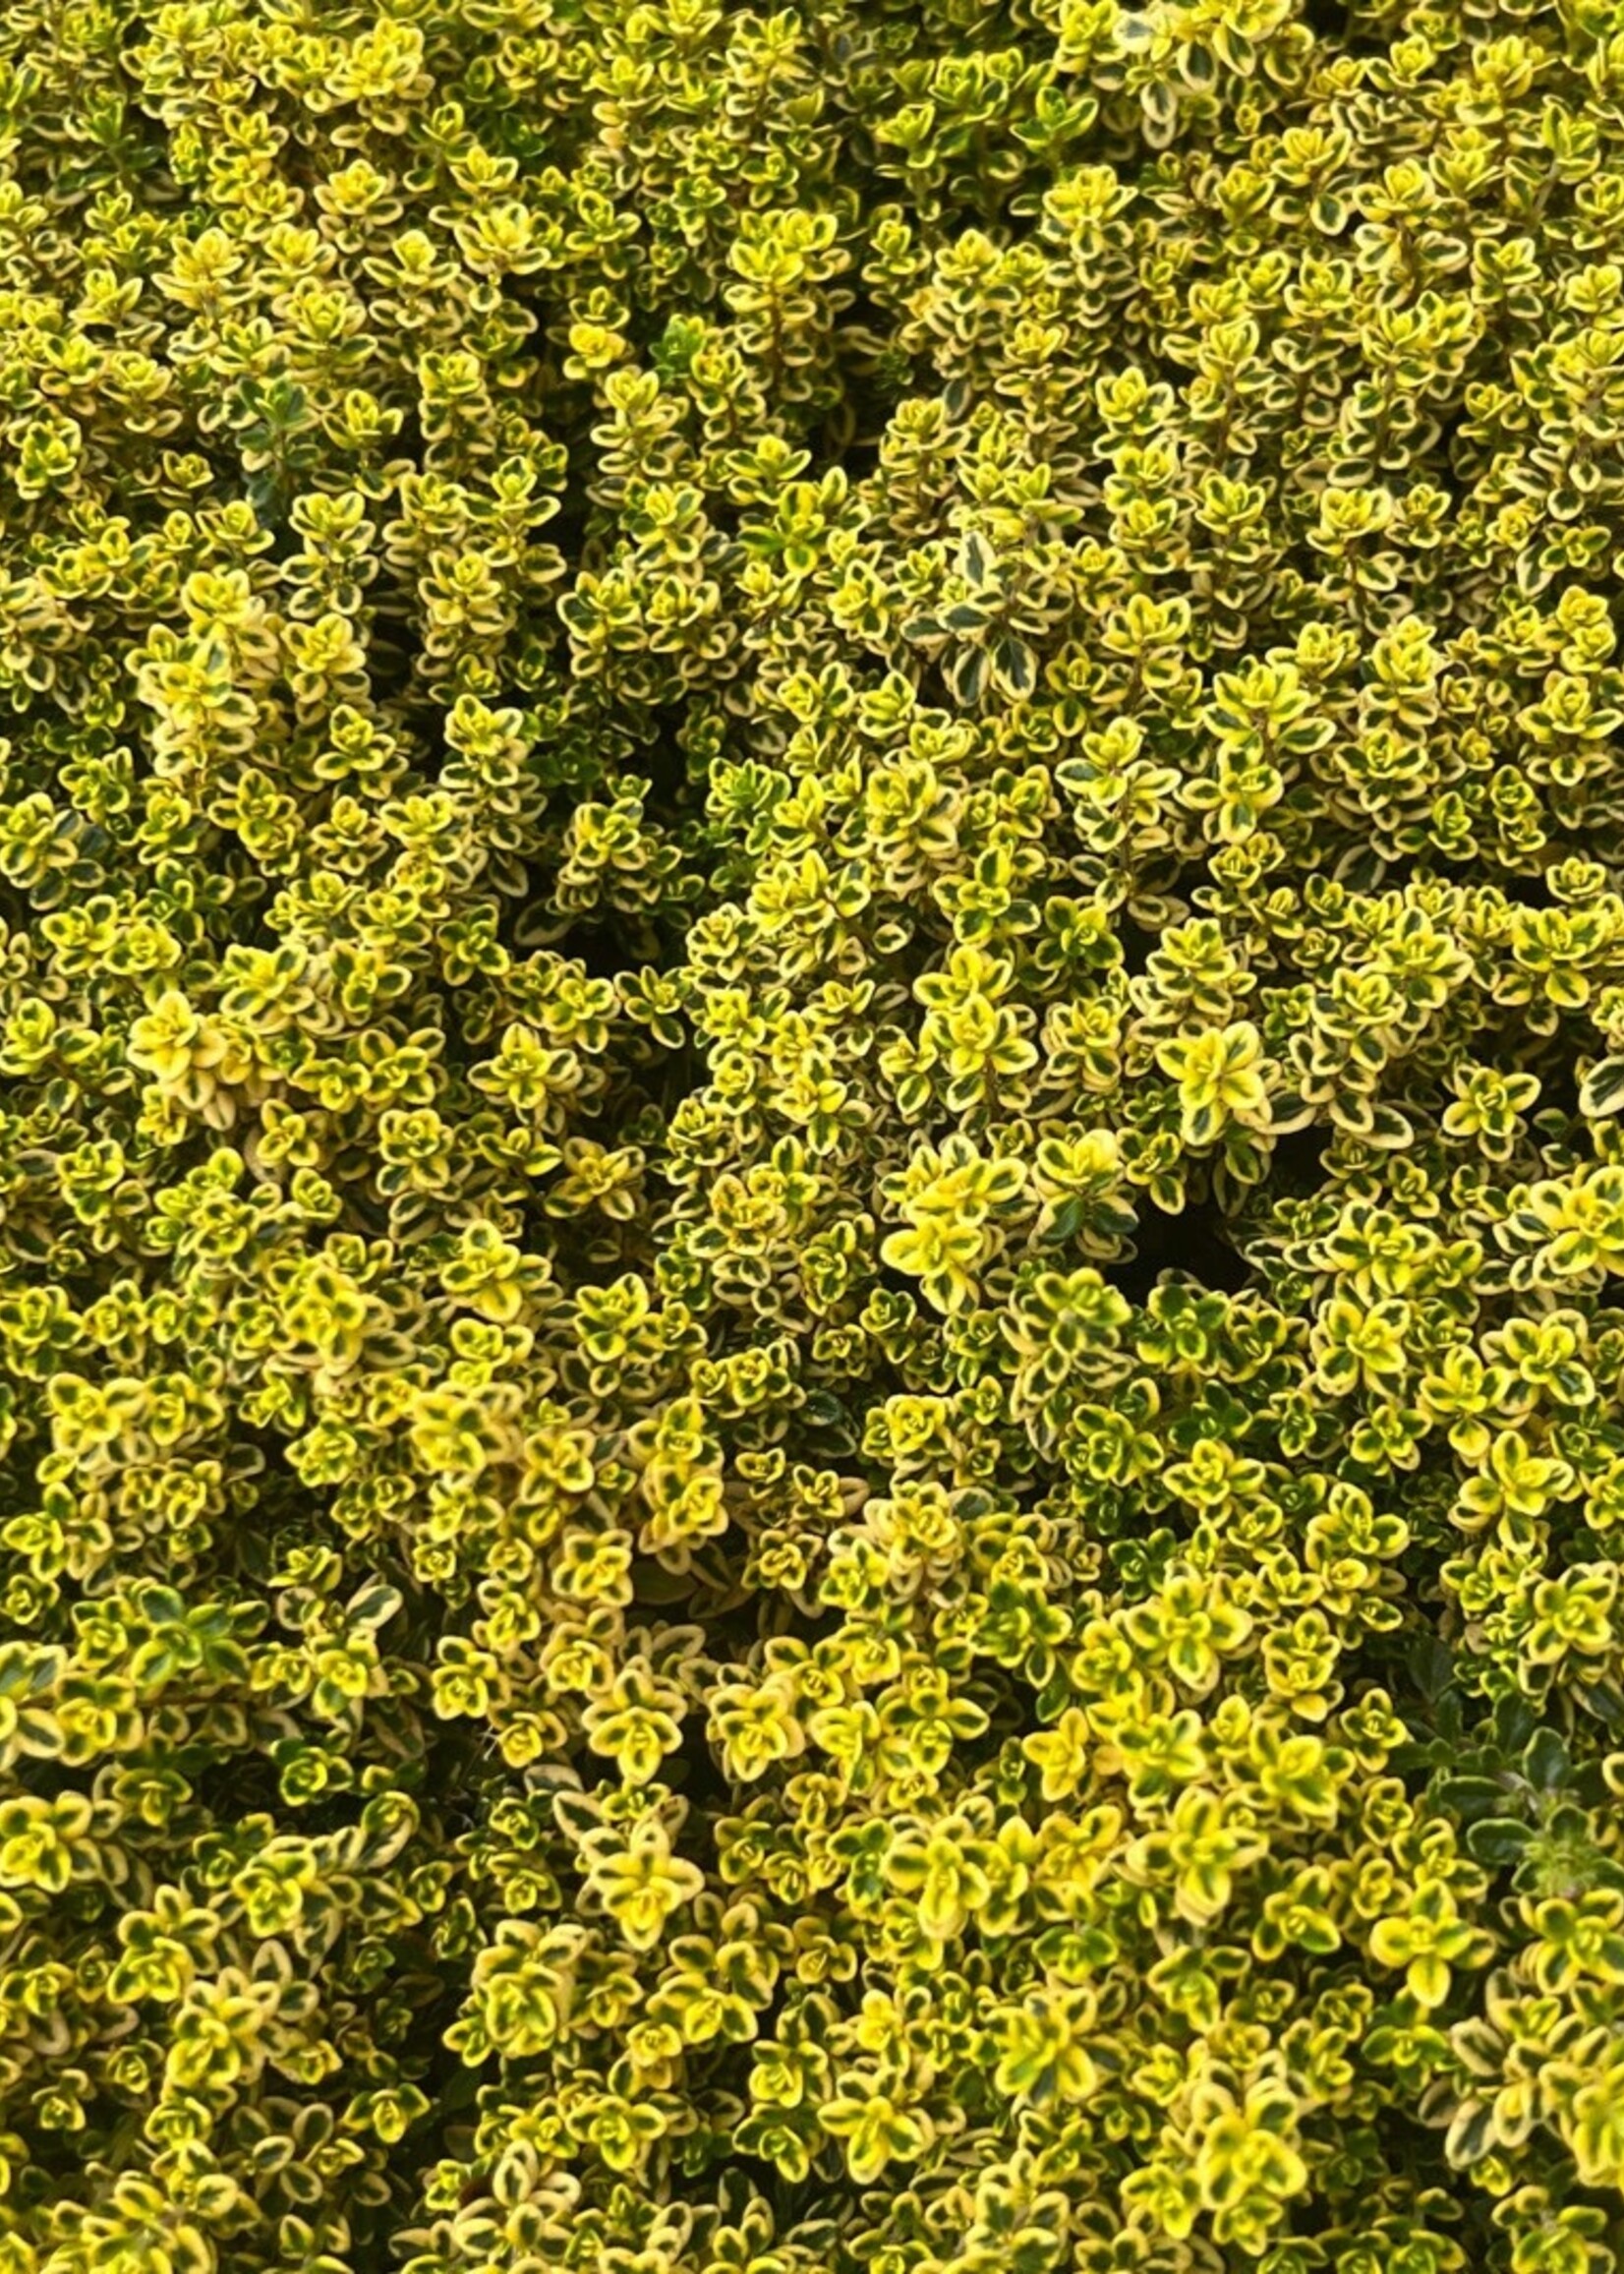 Lemon Thyme Herb Plant